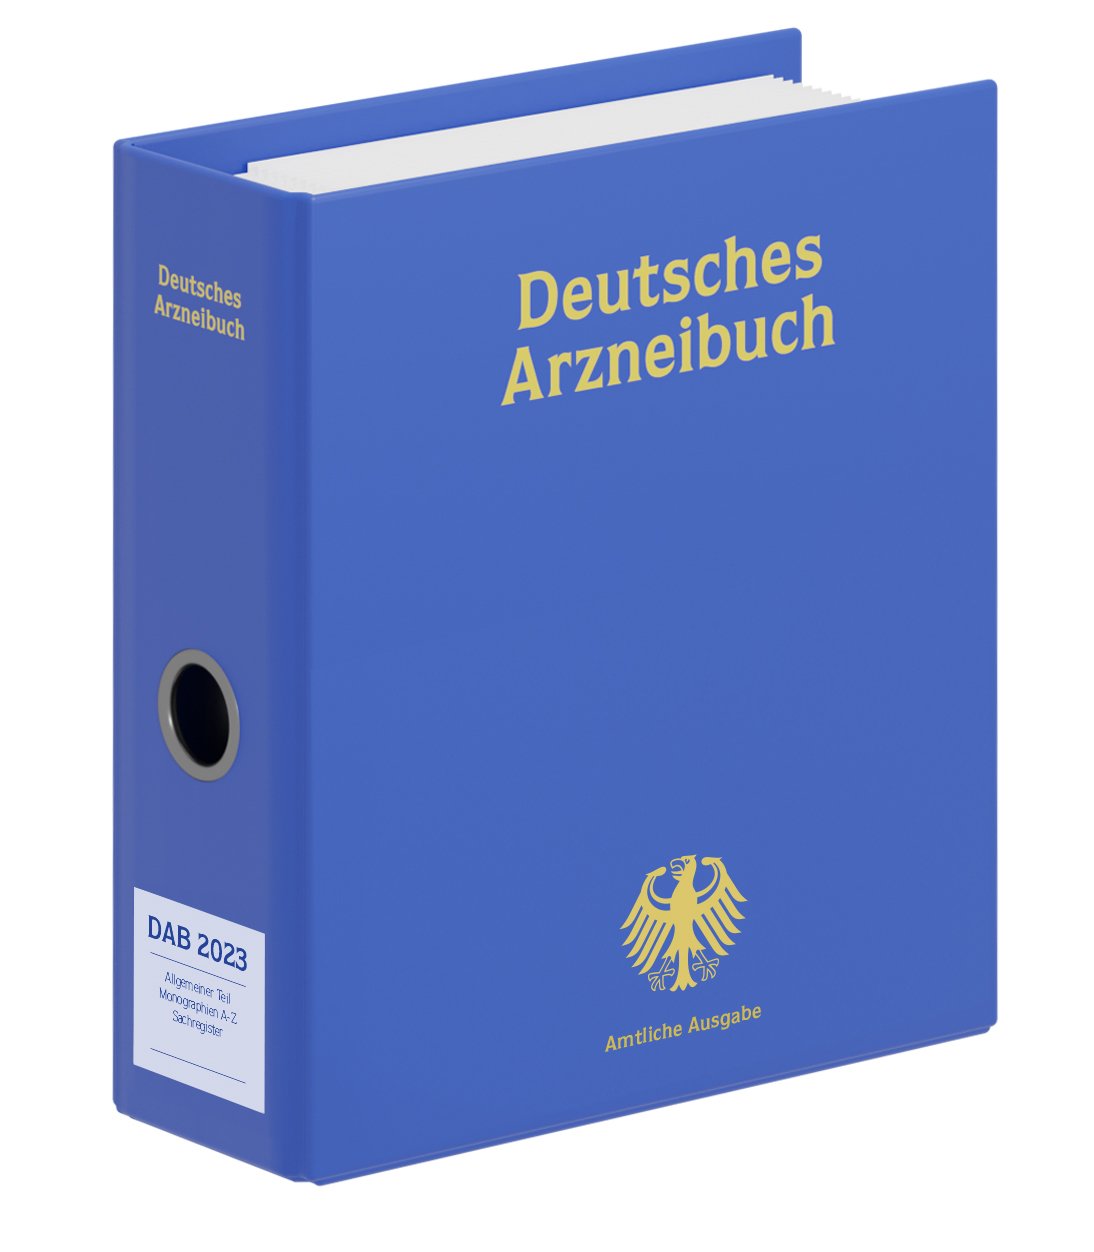 Deutsches Arzneibuch 2023
(DAB 2023)